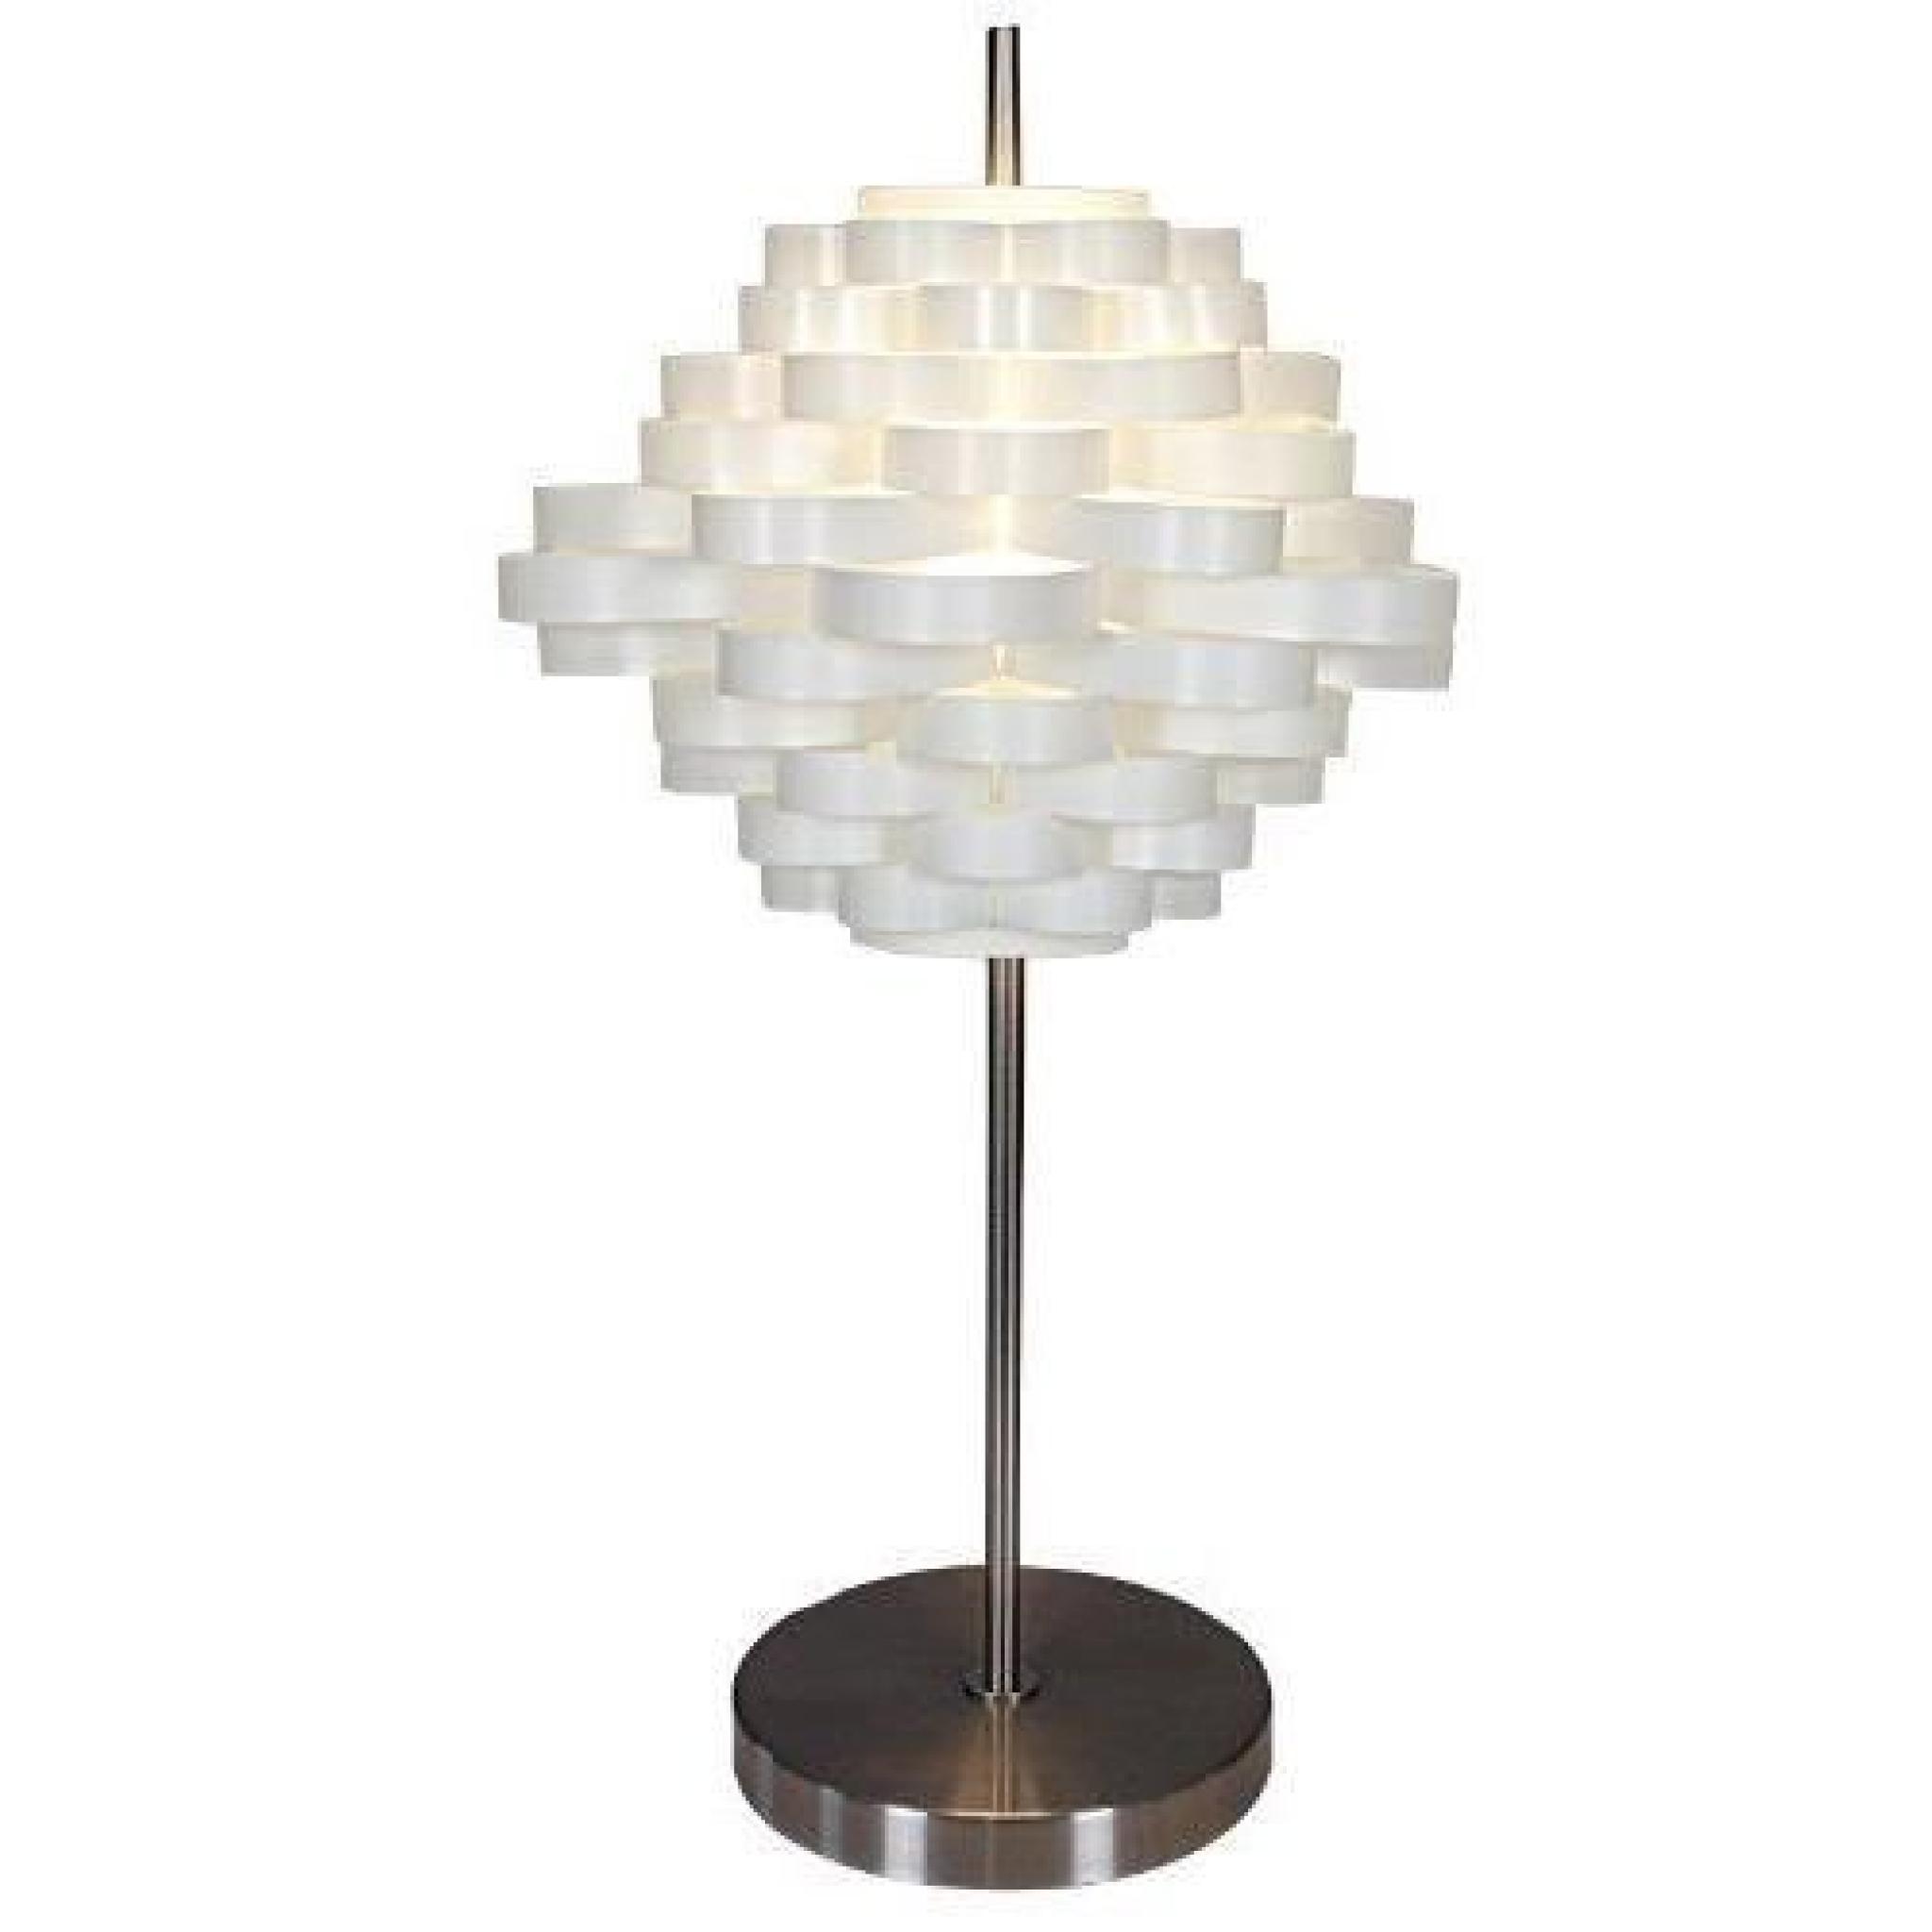 Naeve Leuchten 3025823 Lampe de table décorative en métal et plastique livrée sans ampoule Interrupteur sur cordon Blanc 61 x 35 cm